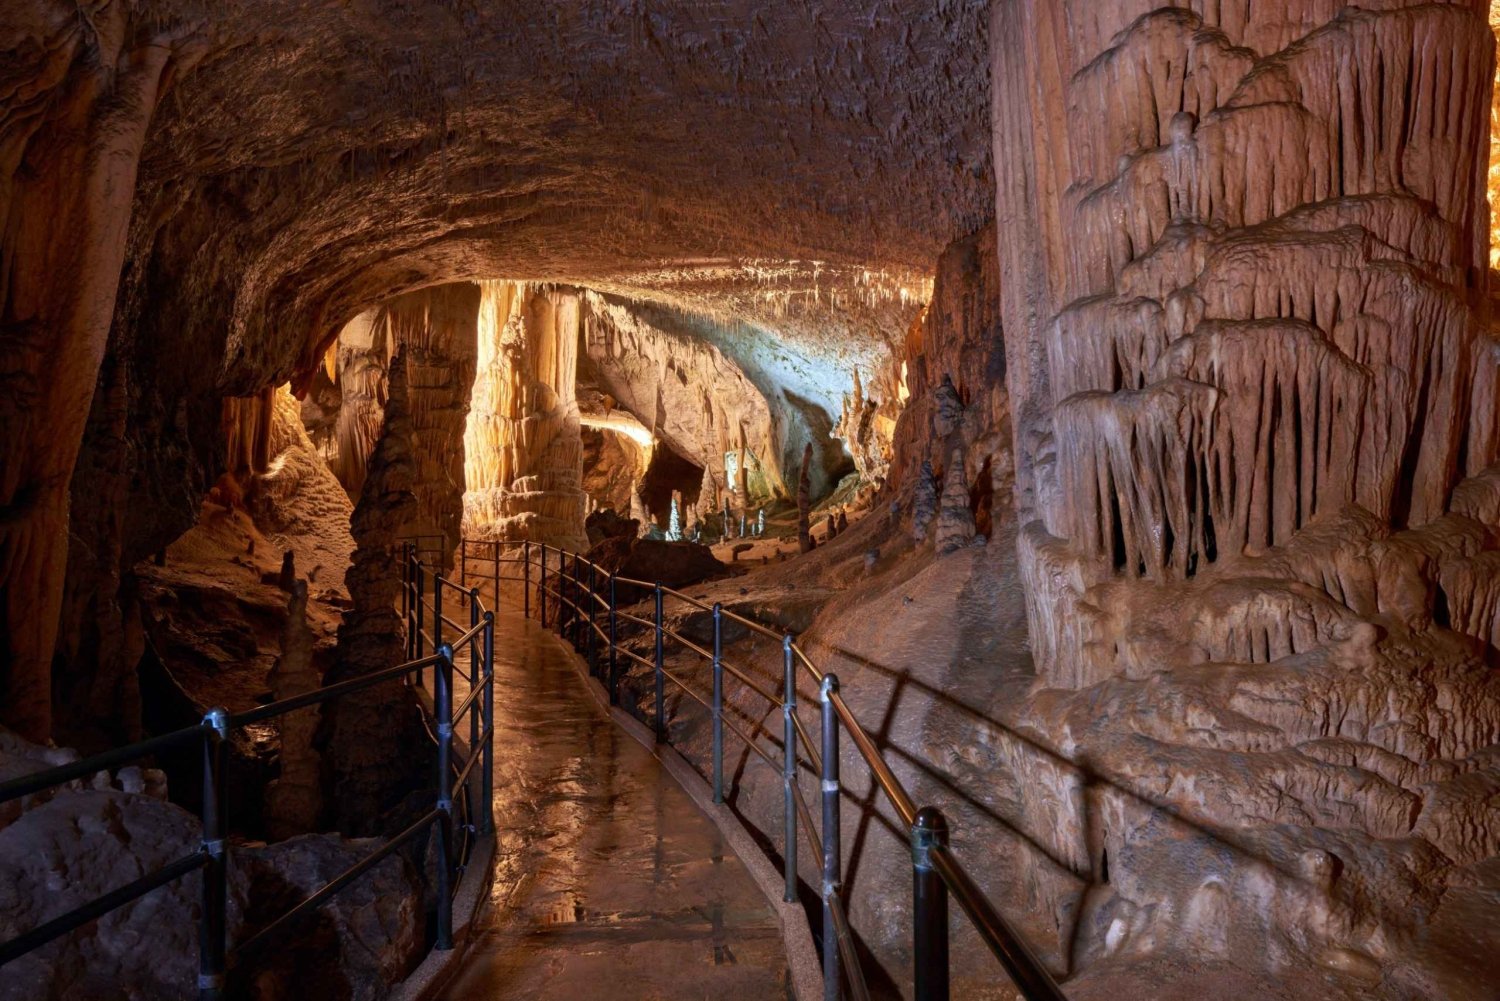 Au départ de Bled : Excursion d'une journée à la grotte de Postojna et au château de Predjama